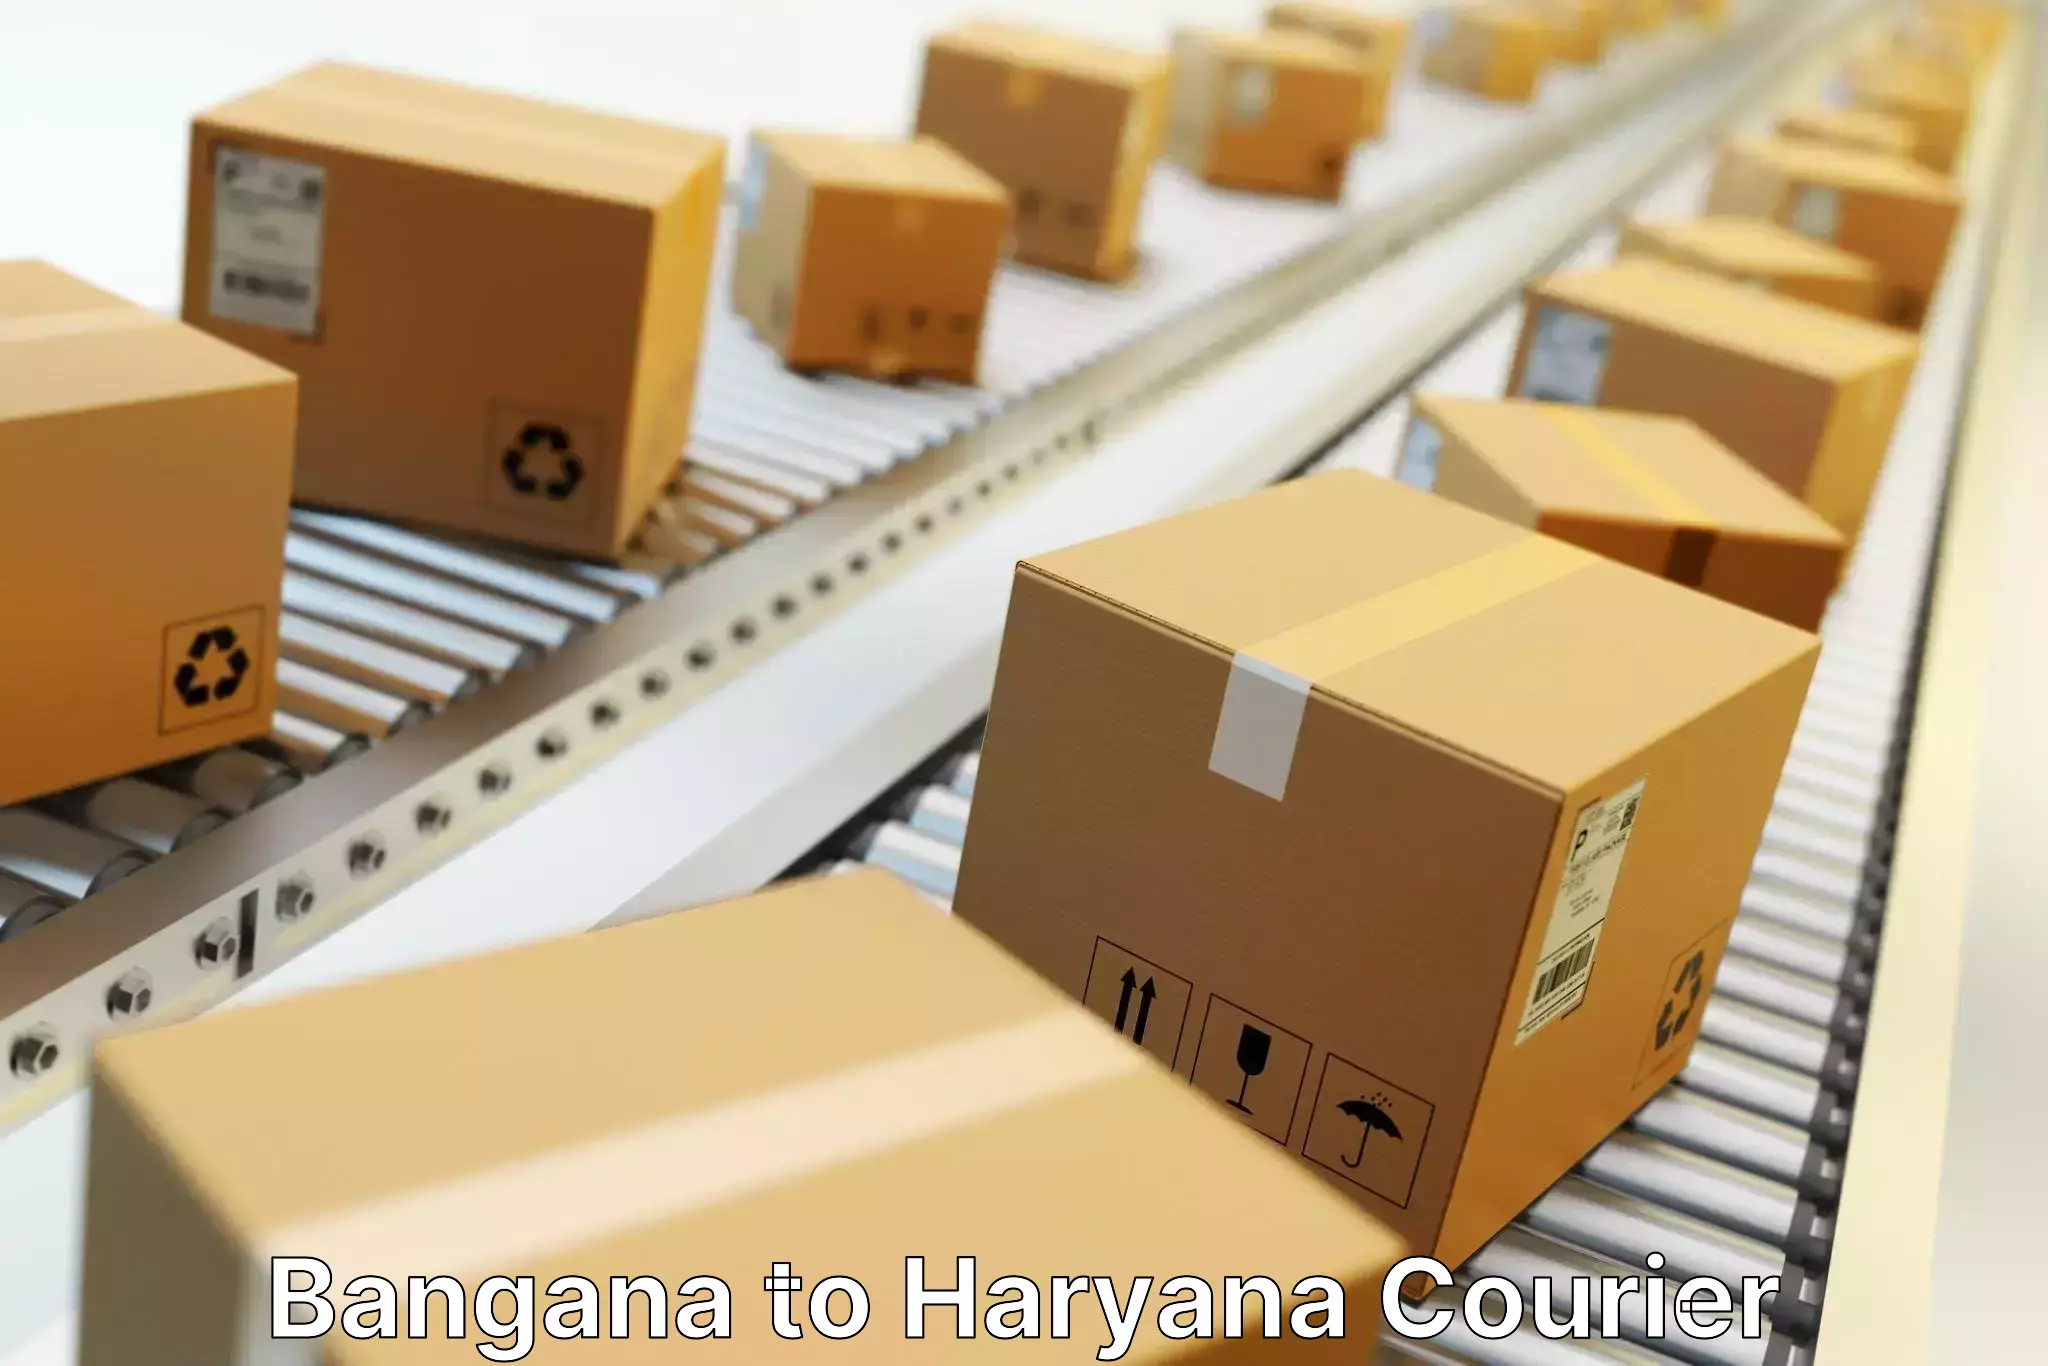 Courier service partnerships Bangana to Chaudhary Charan Singh Haryana Agricultural University Hisar